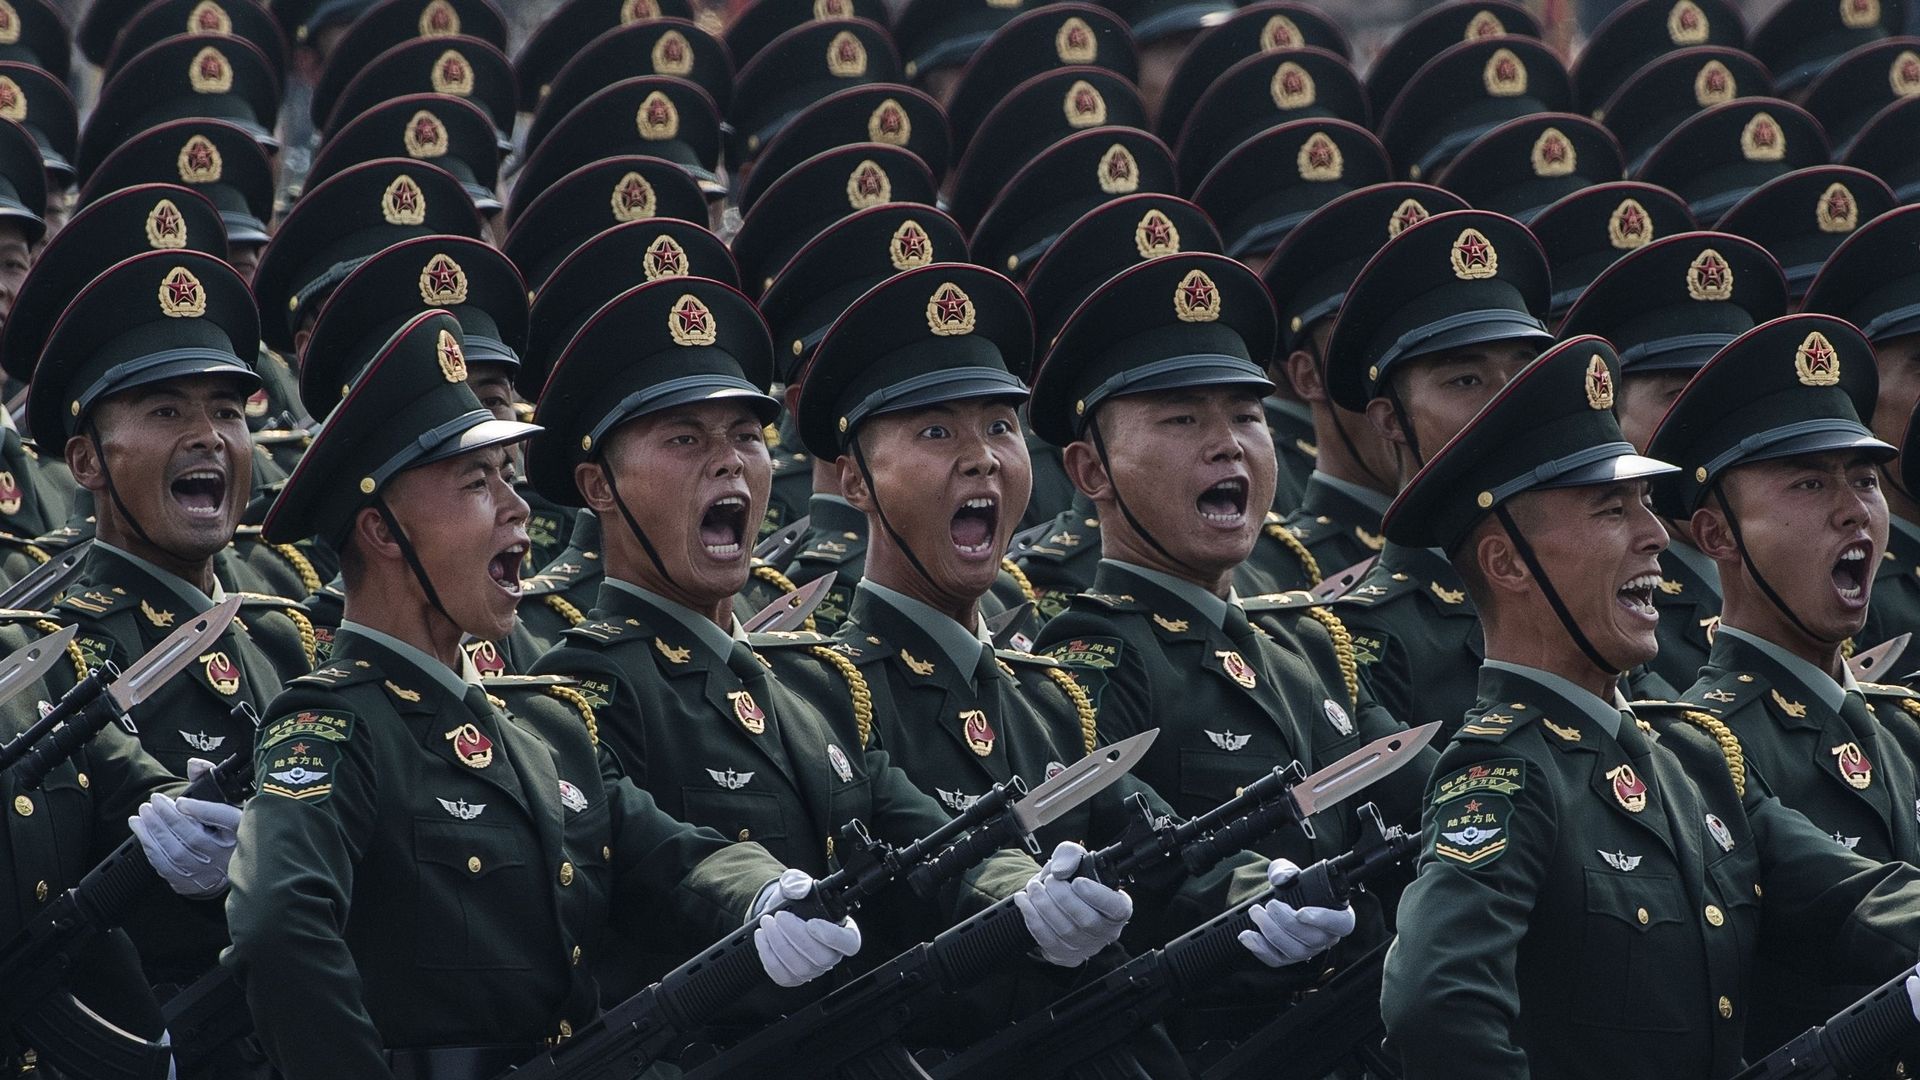 Des soldats chinois crient en marchant en formation lors du défilé du 1er octobre 2019 à Pékin pour célébrer le 70e anniversaire de la fondation de la République populaire de Chine sur la place Tiananmen en 1949.